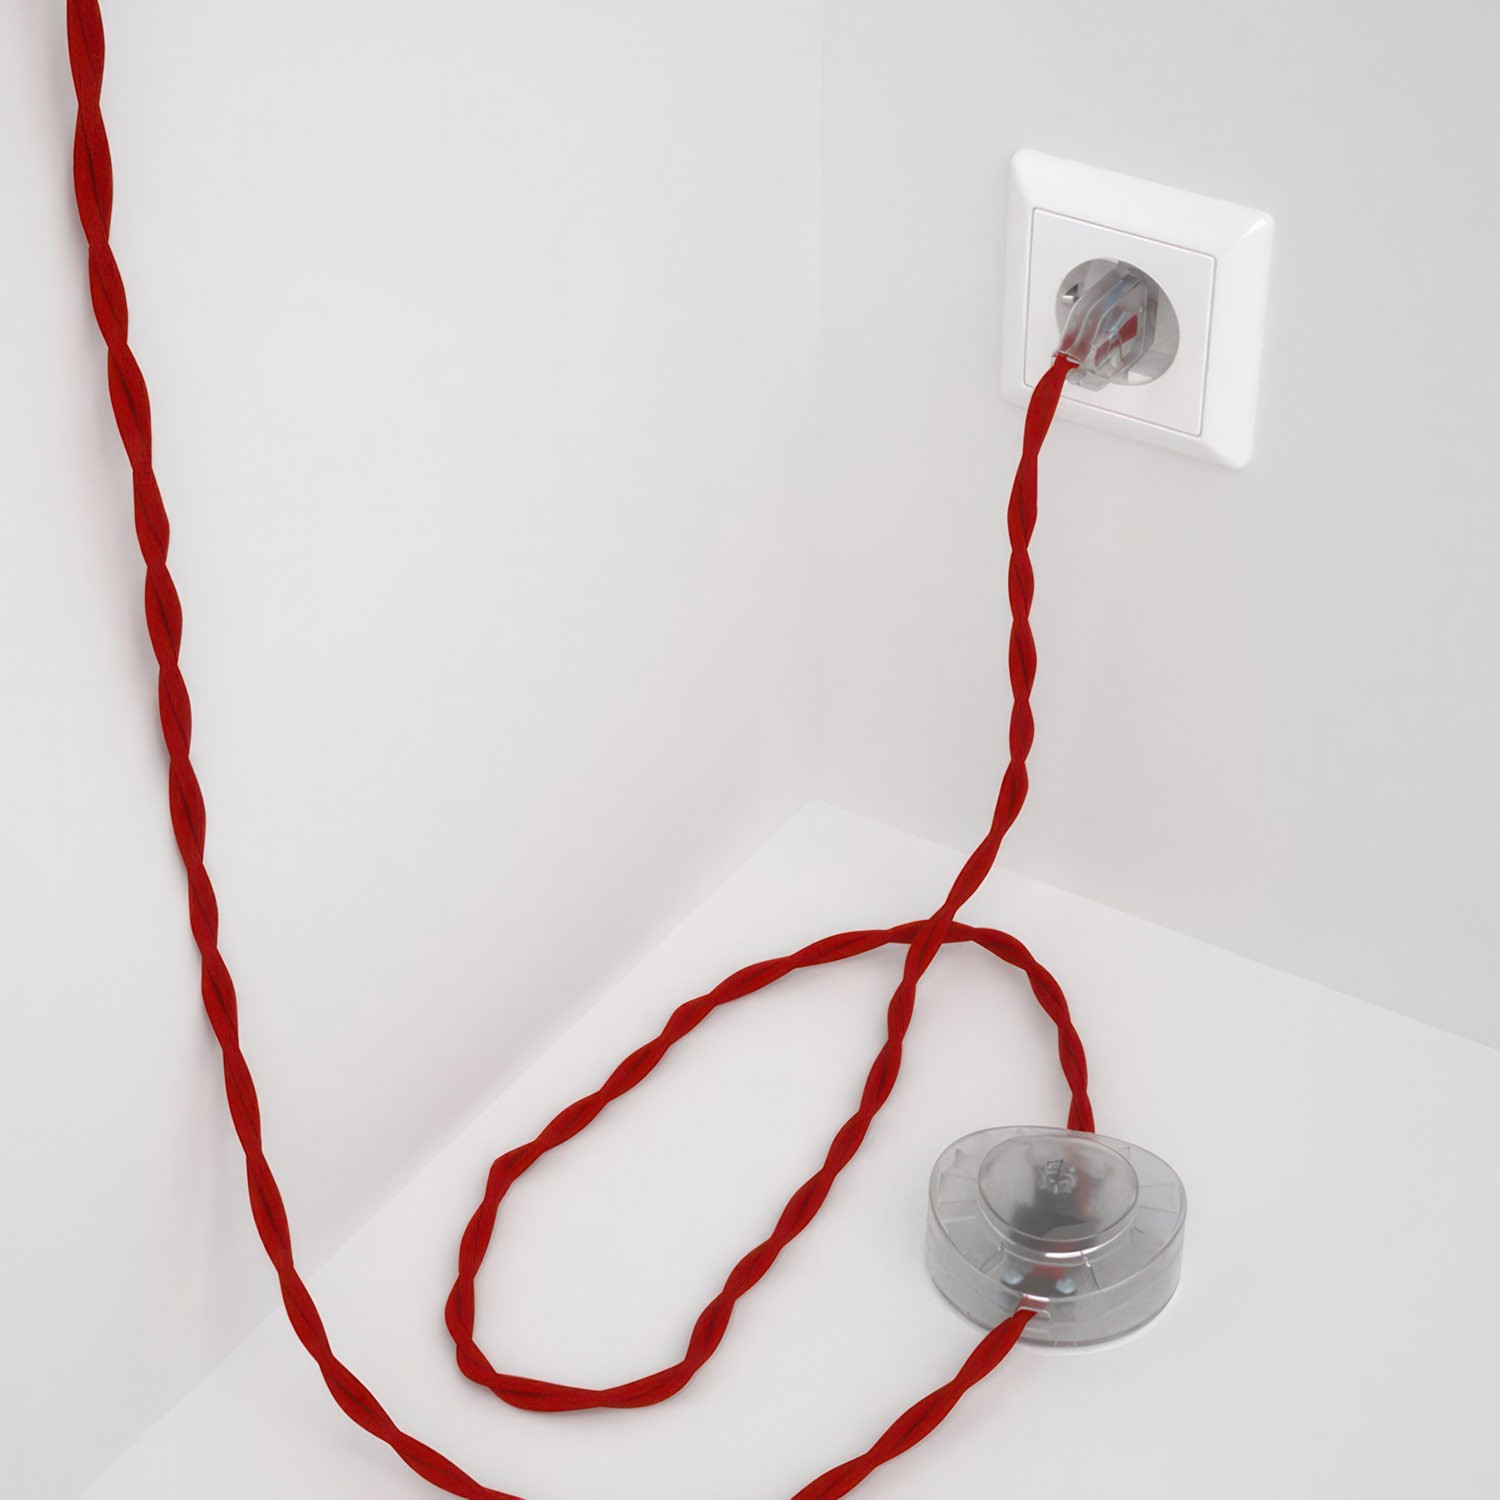 Cableado para lámpara de pie, cable TM09 Efecto Seda Rojo 3 m. Elige tu el color de la clavija y del interruptor!